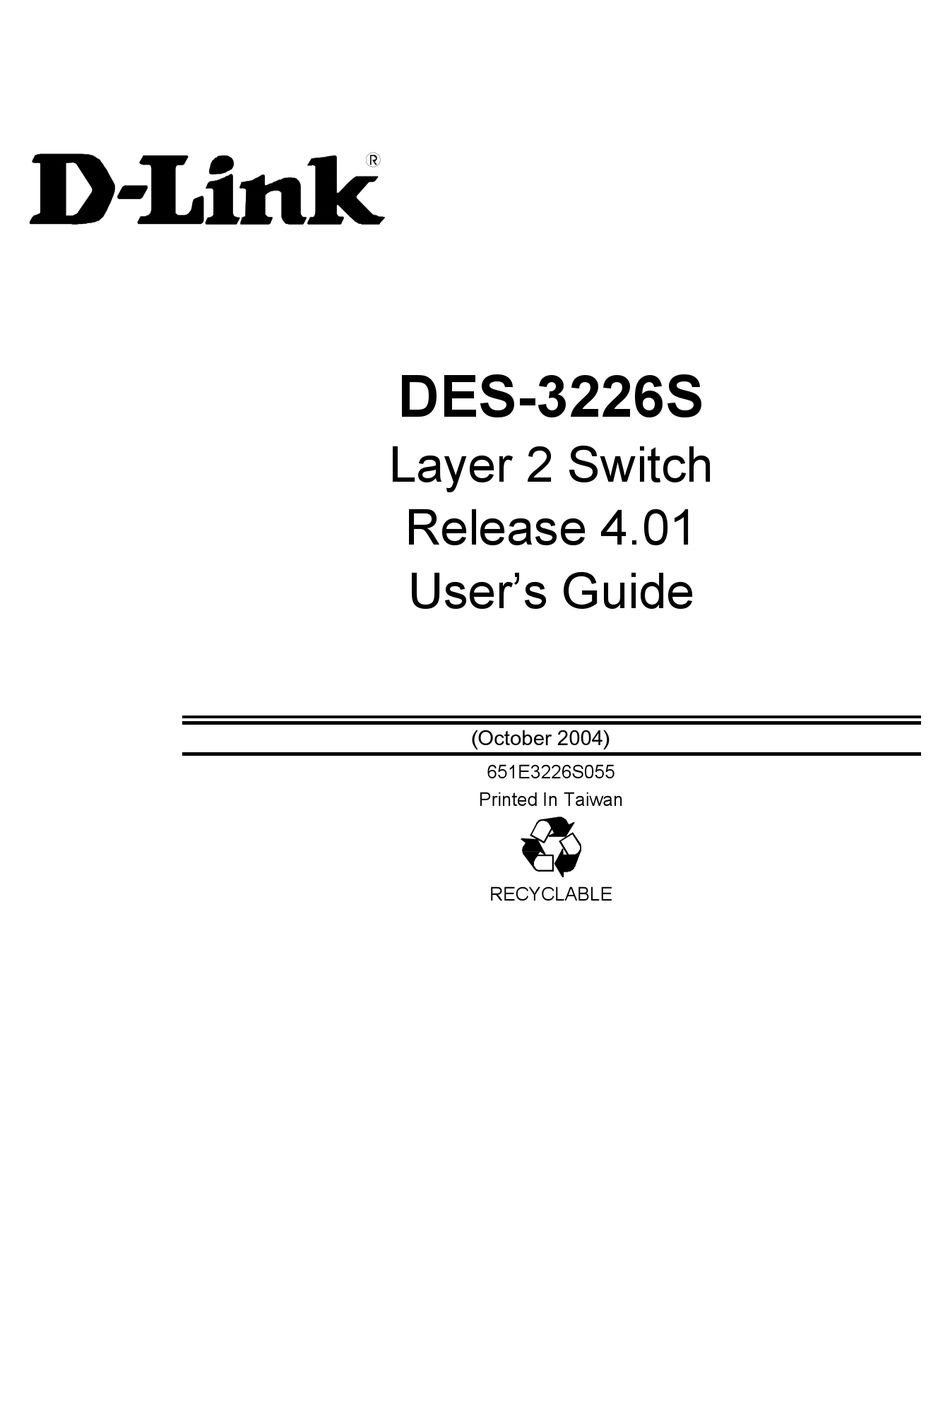 D-Link DES-332GS expansion module 